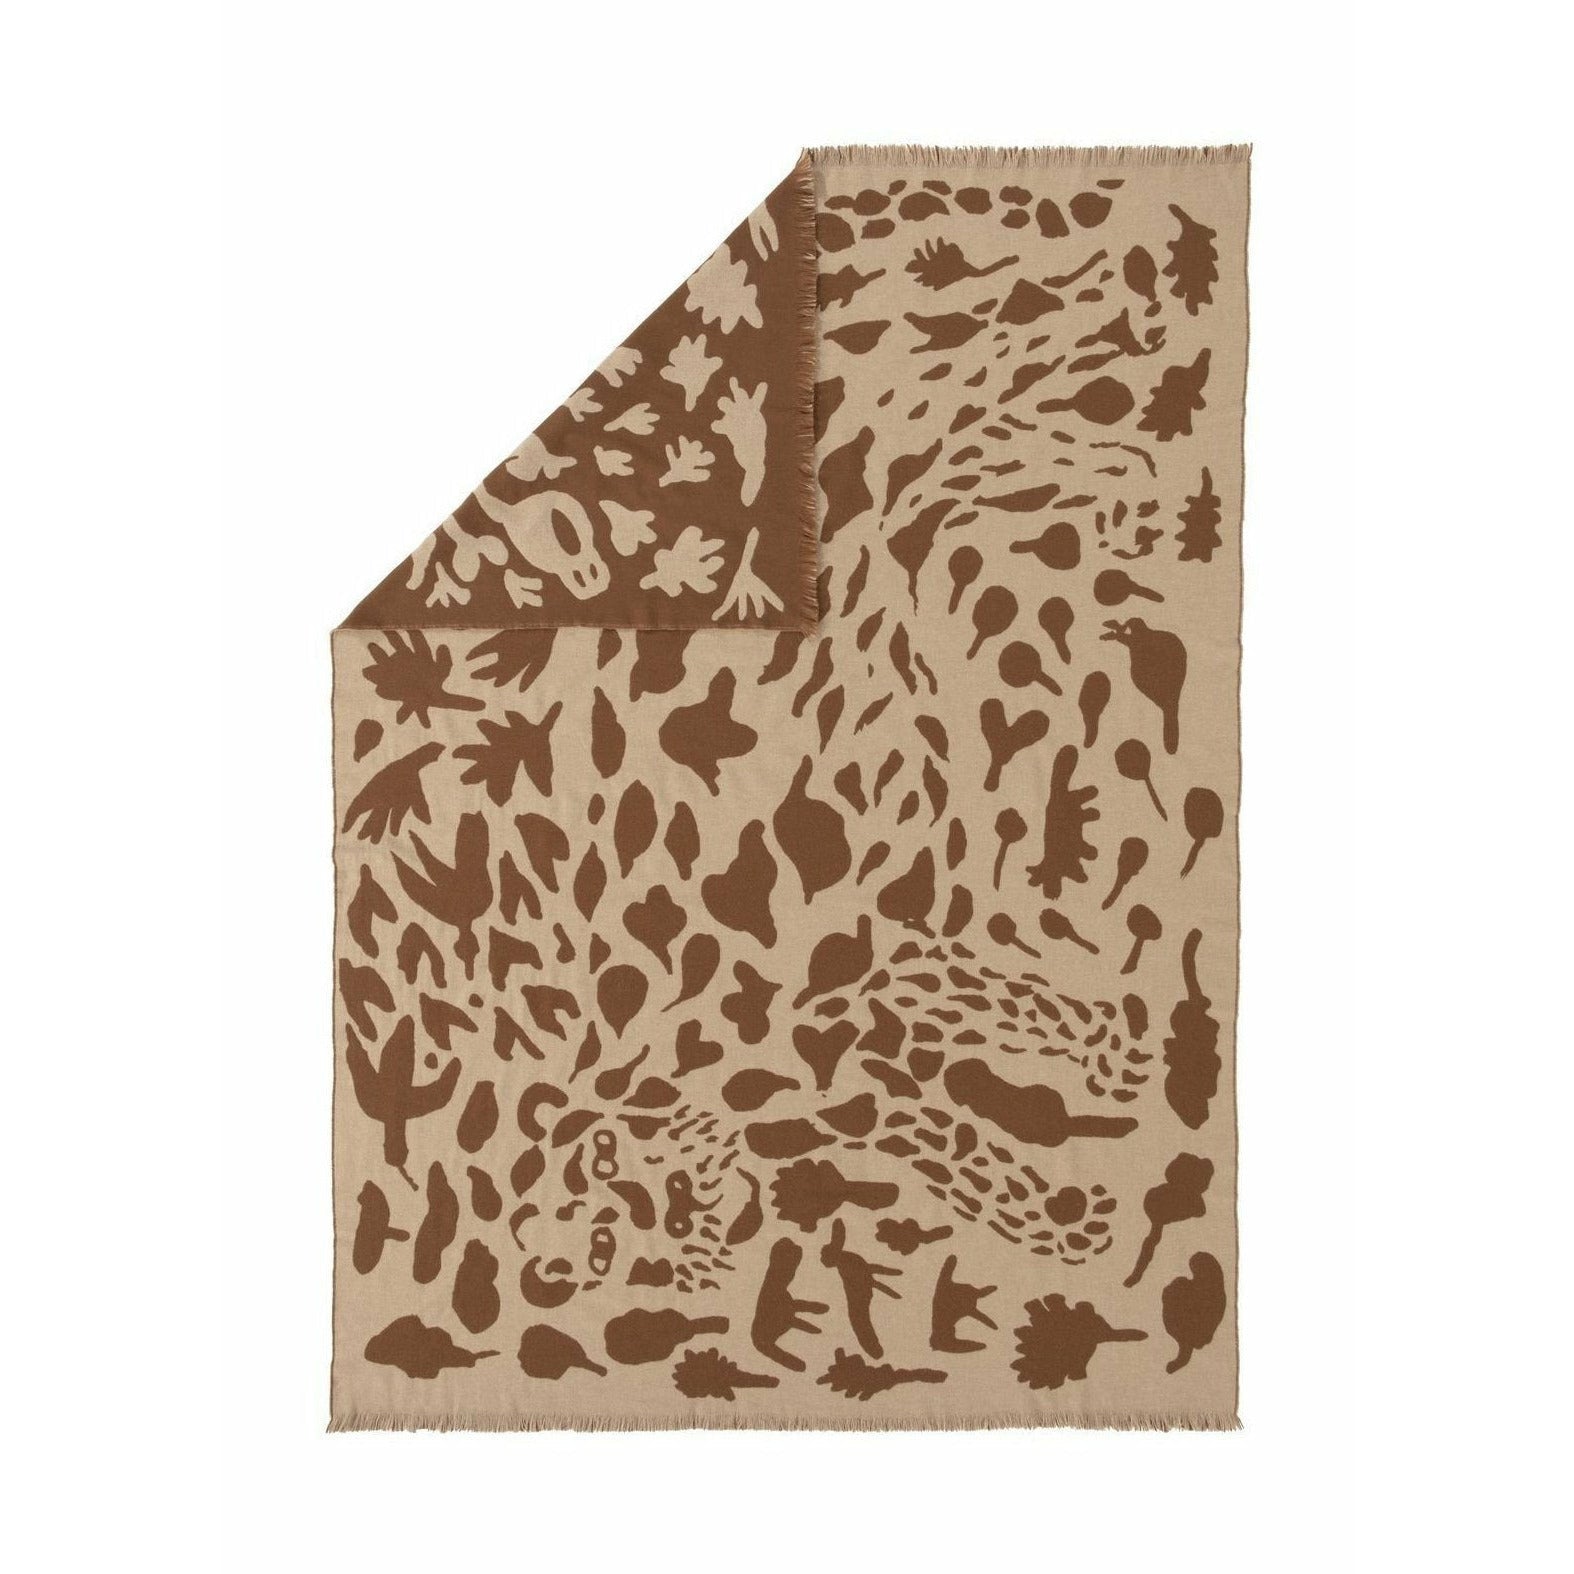 Iittala Oiva Toikka mattan Cheetah Brown, 180x130 cm